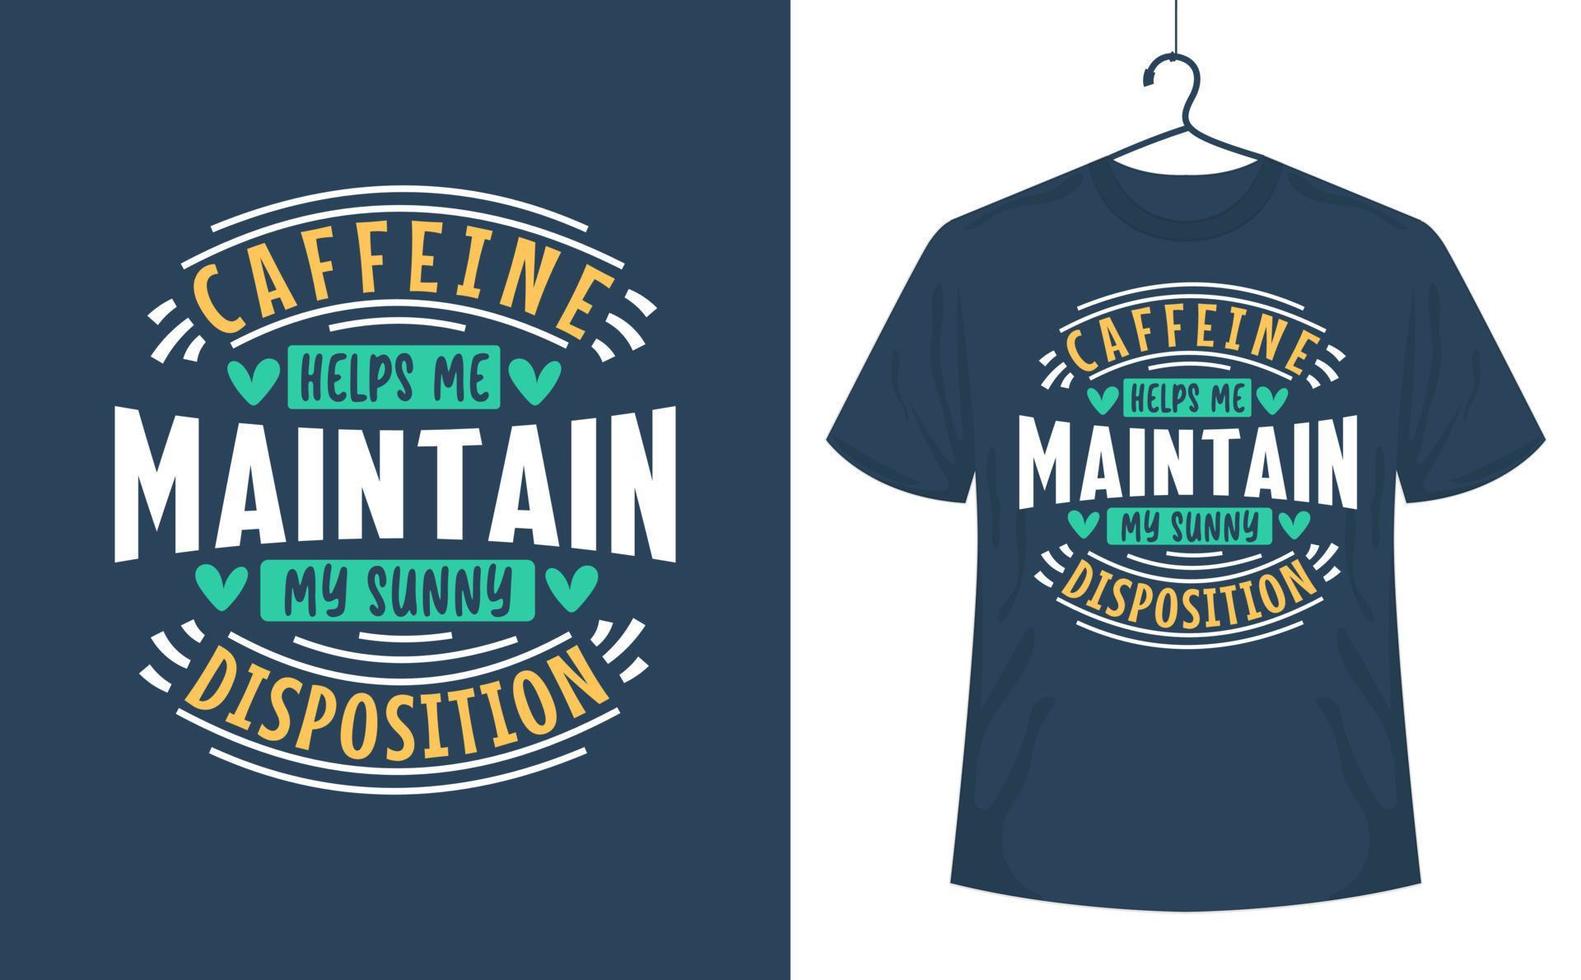 kaffe citat t-shirt design, koffein hjälper mig upprätthålla min solig disposition. vektor